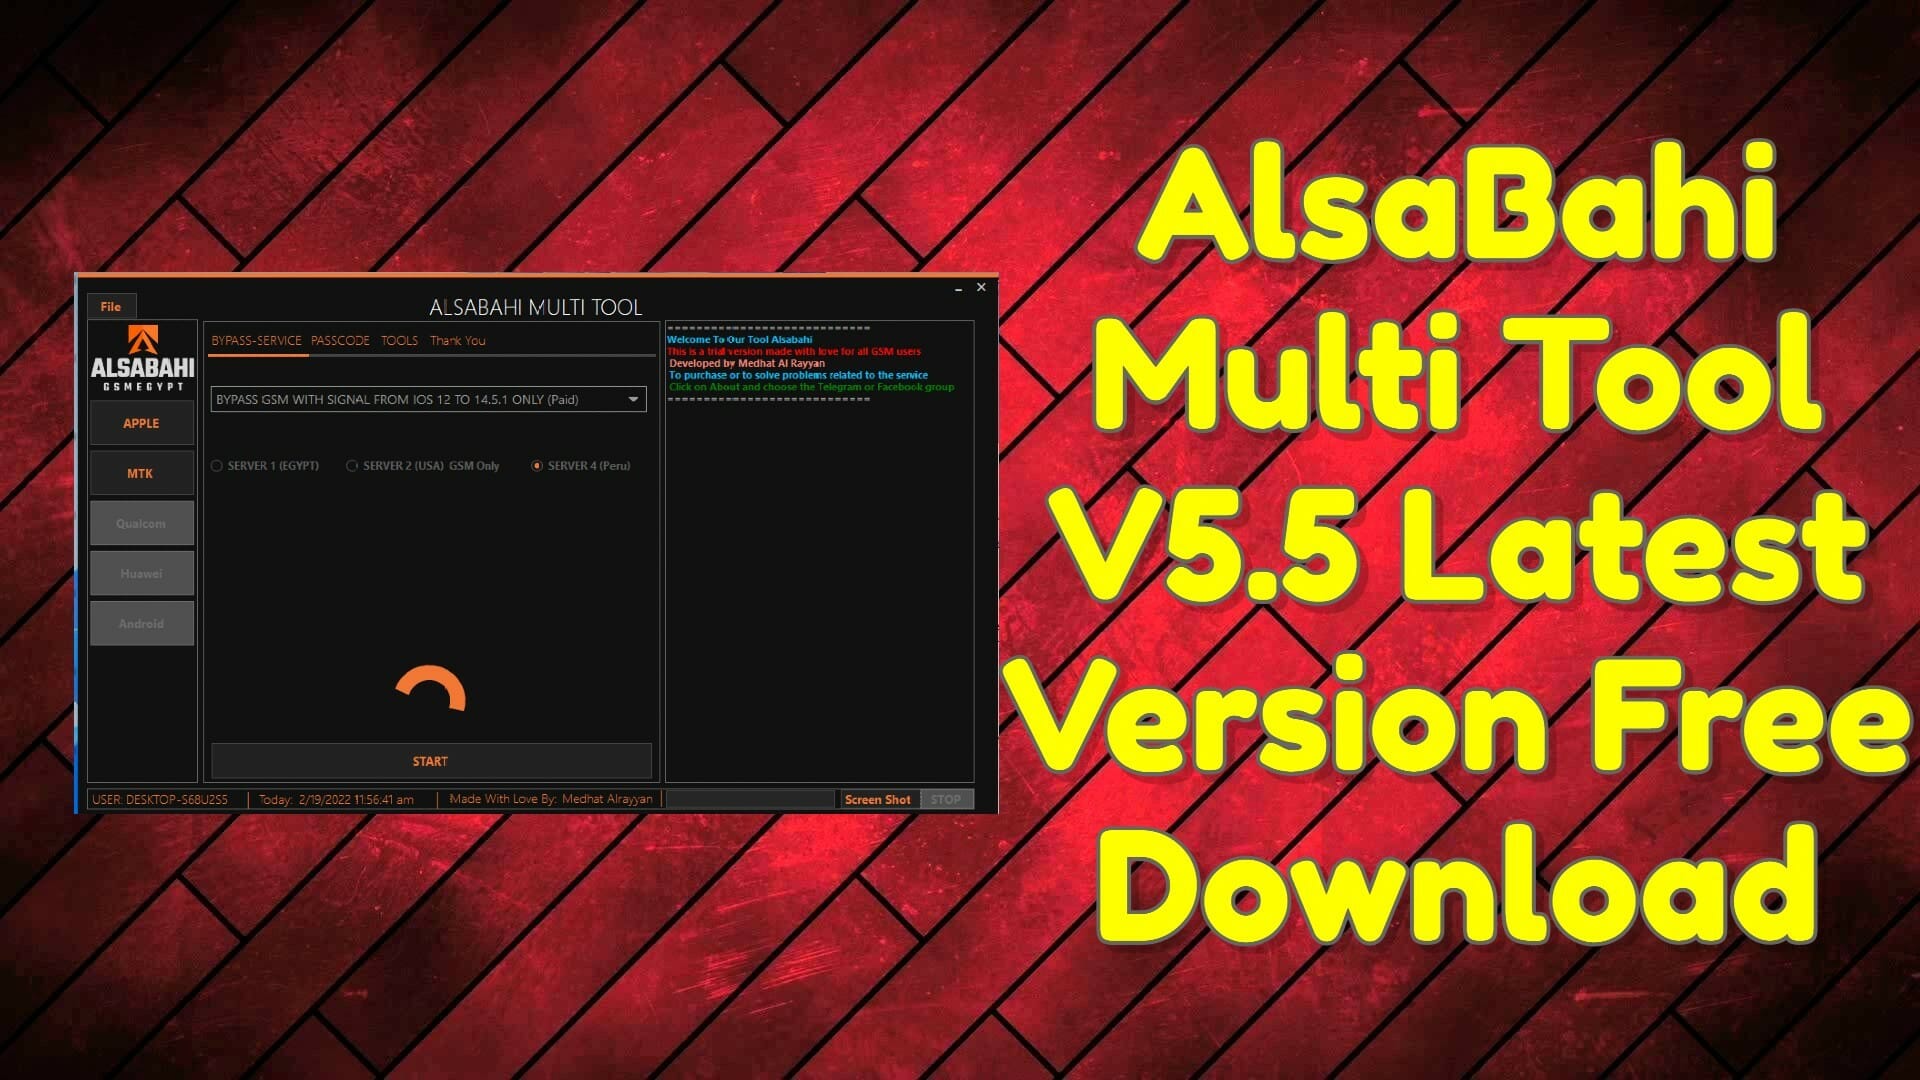 Alsabahi multi tool v5. 5 latest version free download